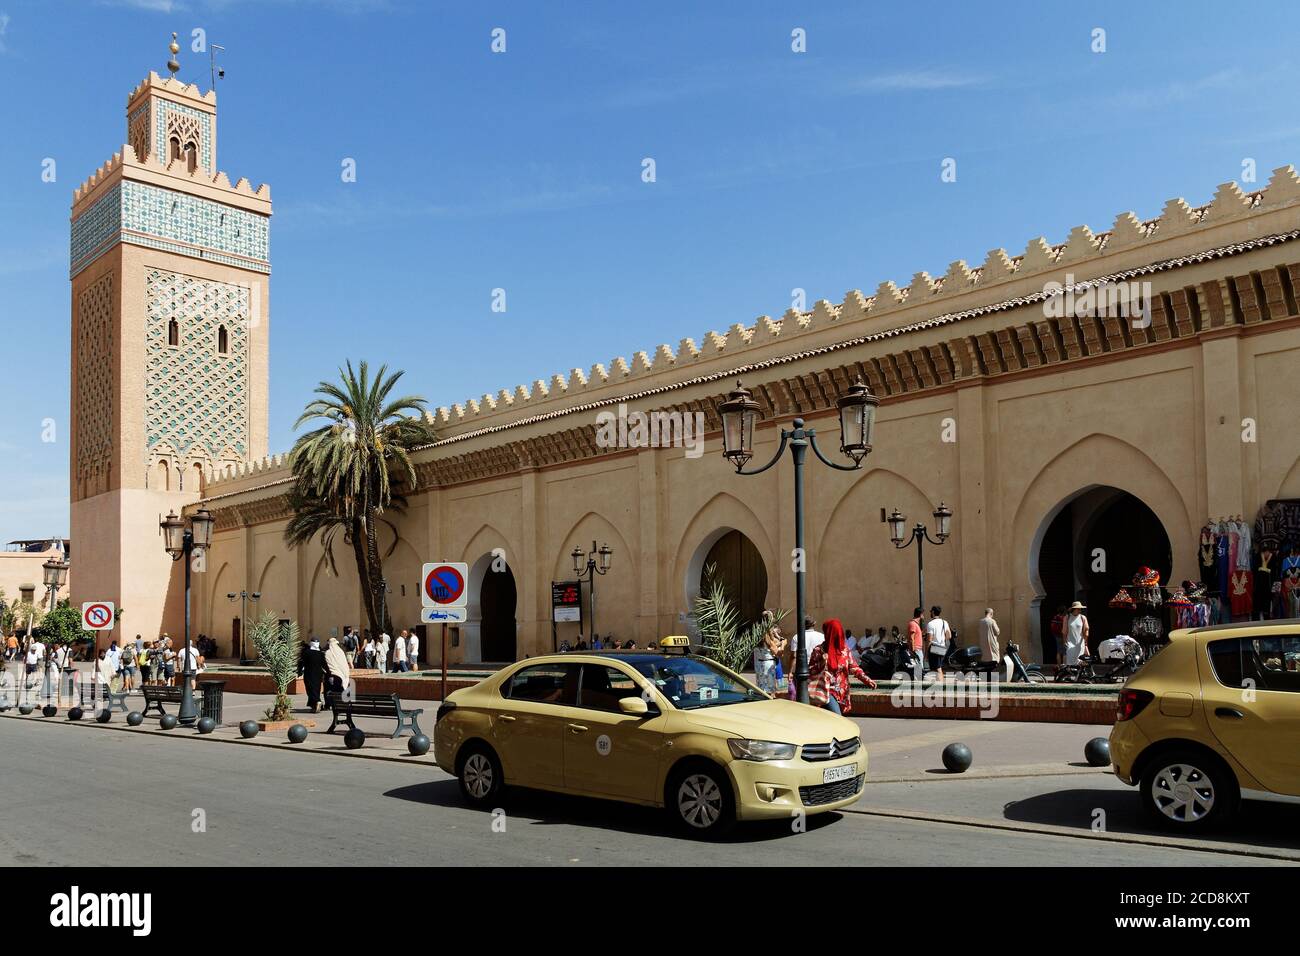 Marrakech,Marruecos-Okt,5,2018: Petit,pequeño, taxi en una calle en Marrakech, los dueños de la tienda y un taxi están esperando a los clientes. La gente está pasando Foto de stock